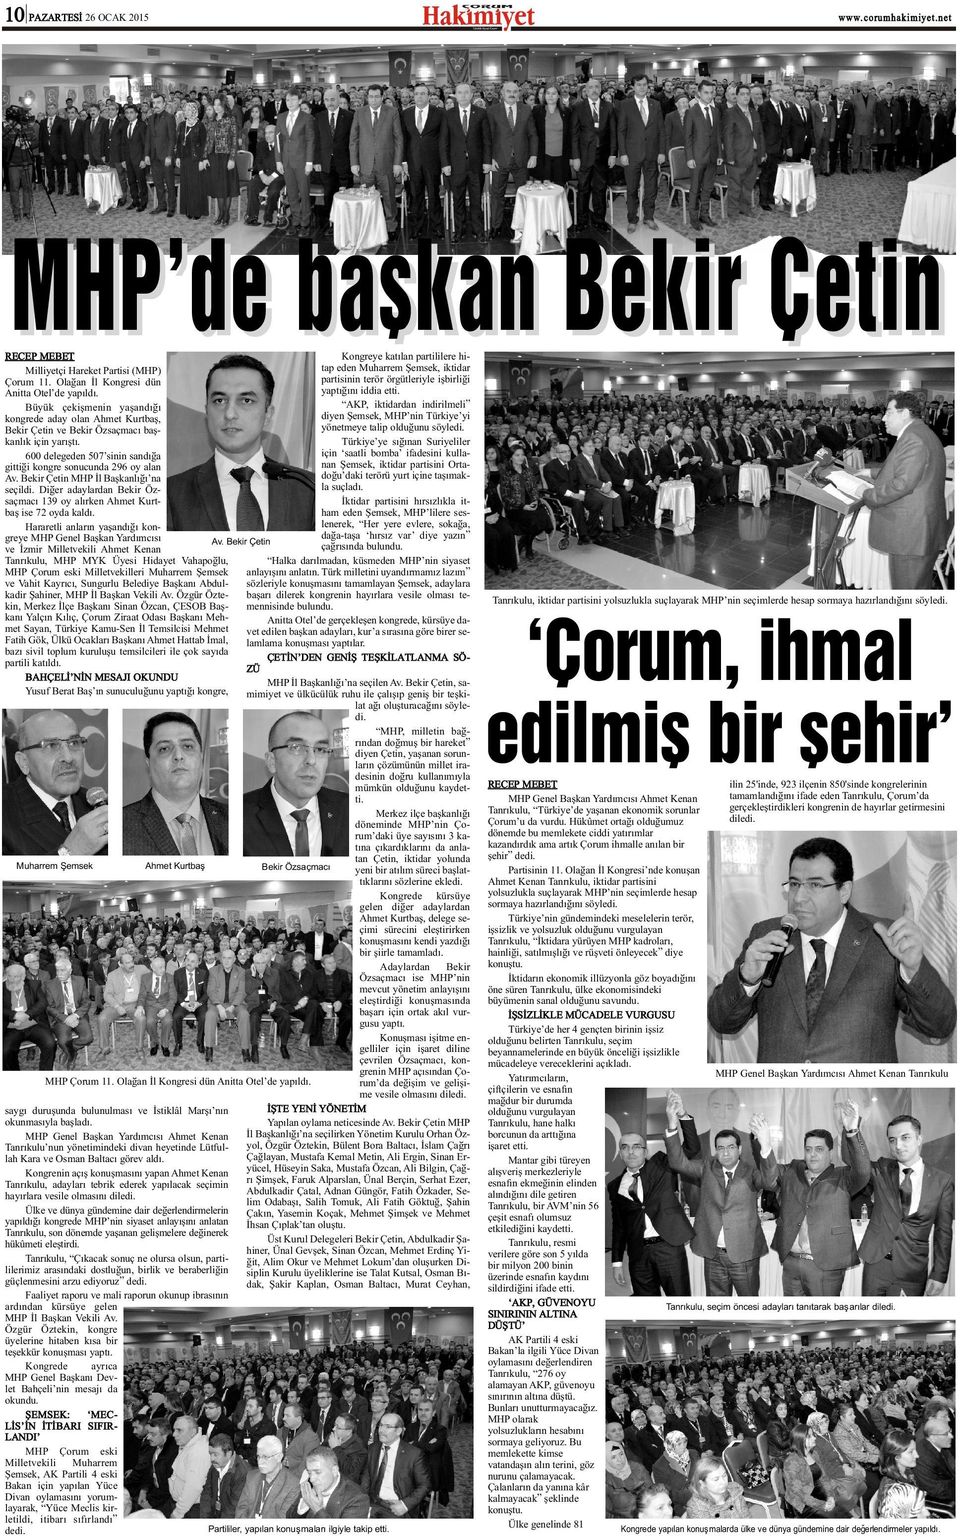 AKP, iktidardan indirilmeli Büyük çekiþmenin yaþandýðý diyen Þemsek, MHP nin Türkiye yi kongrede aday olan Ahmet Kurtbaþ, yönetmeye talip olduðunu söyledi.